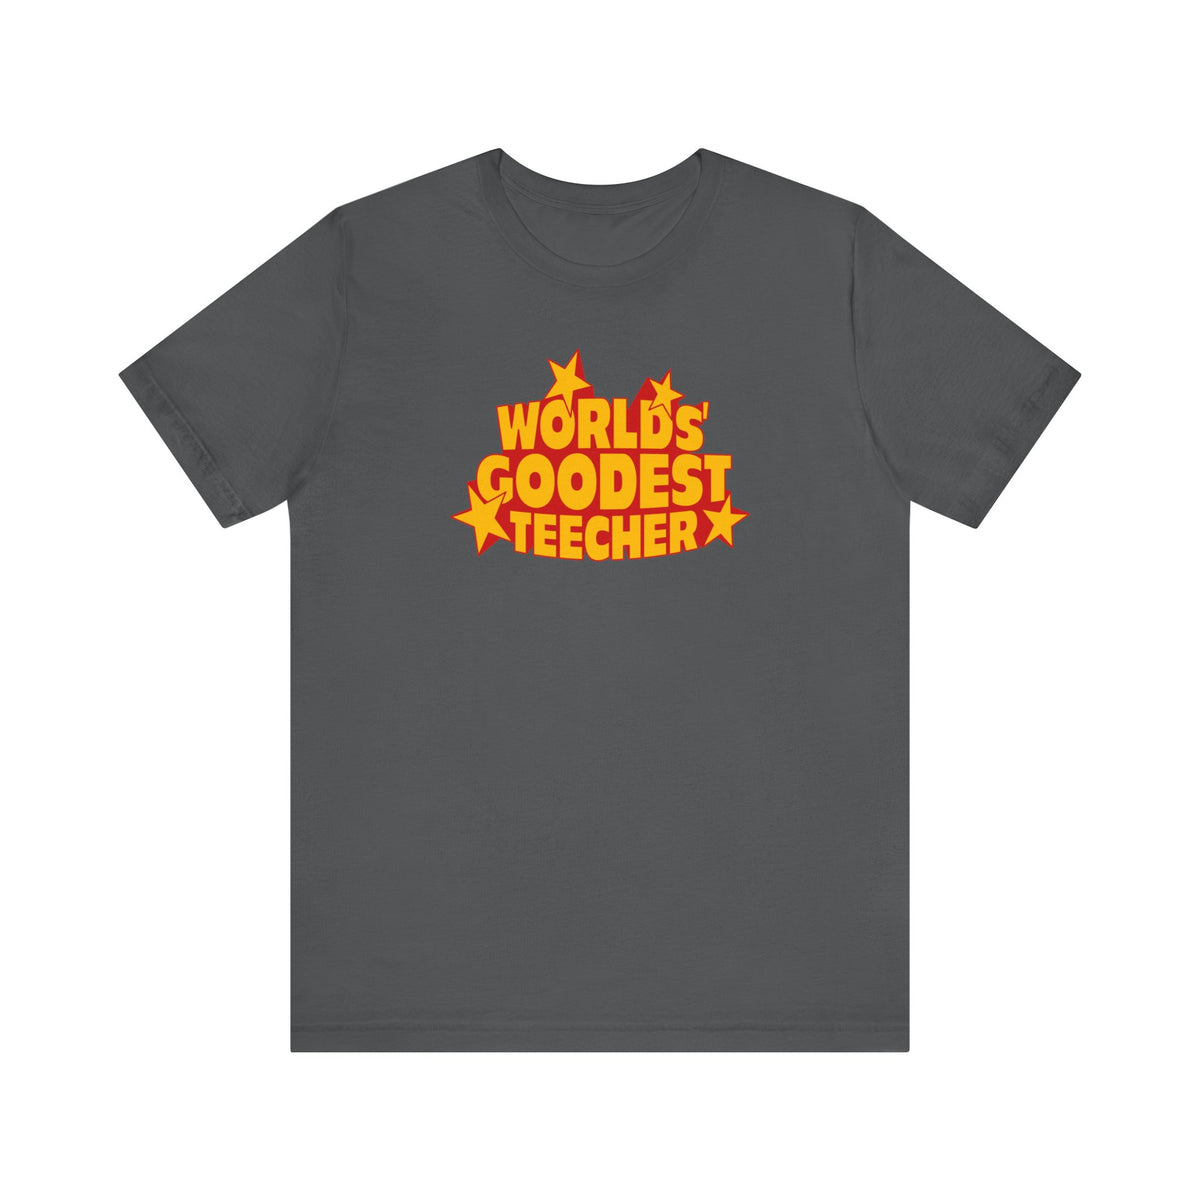 Worlds' Goodest Teecher - Men's T-Shirt